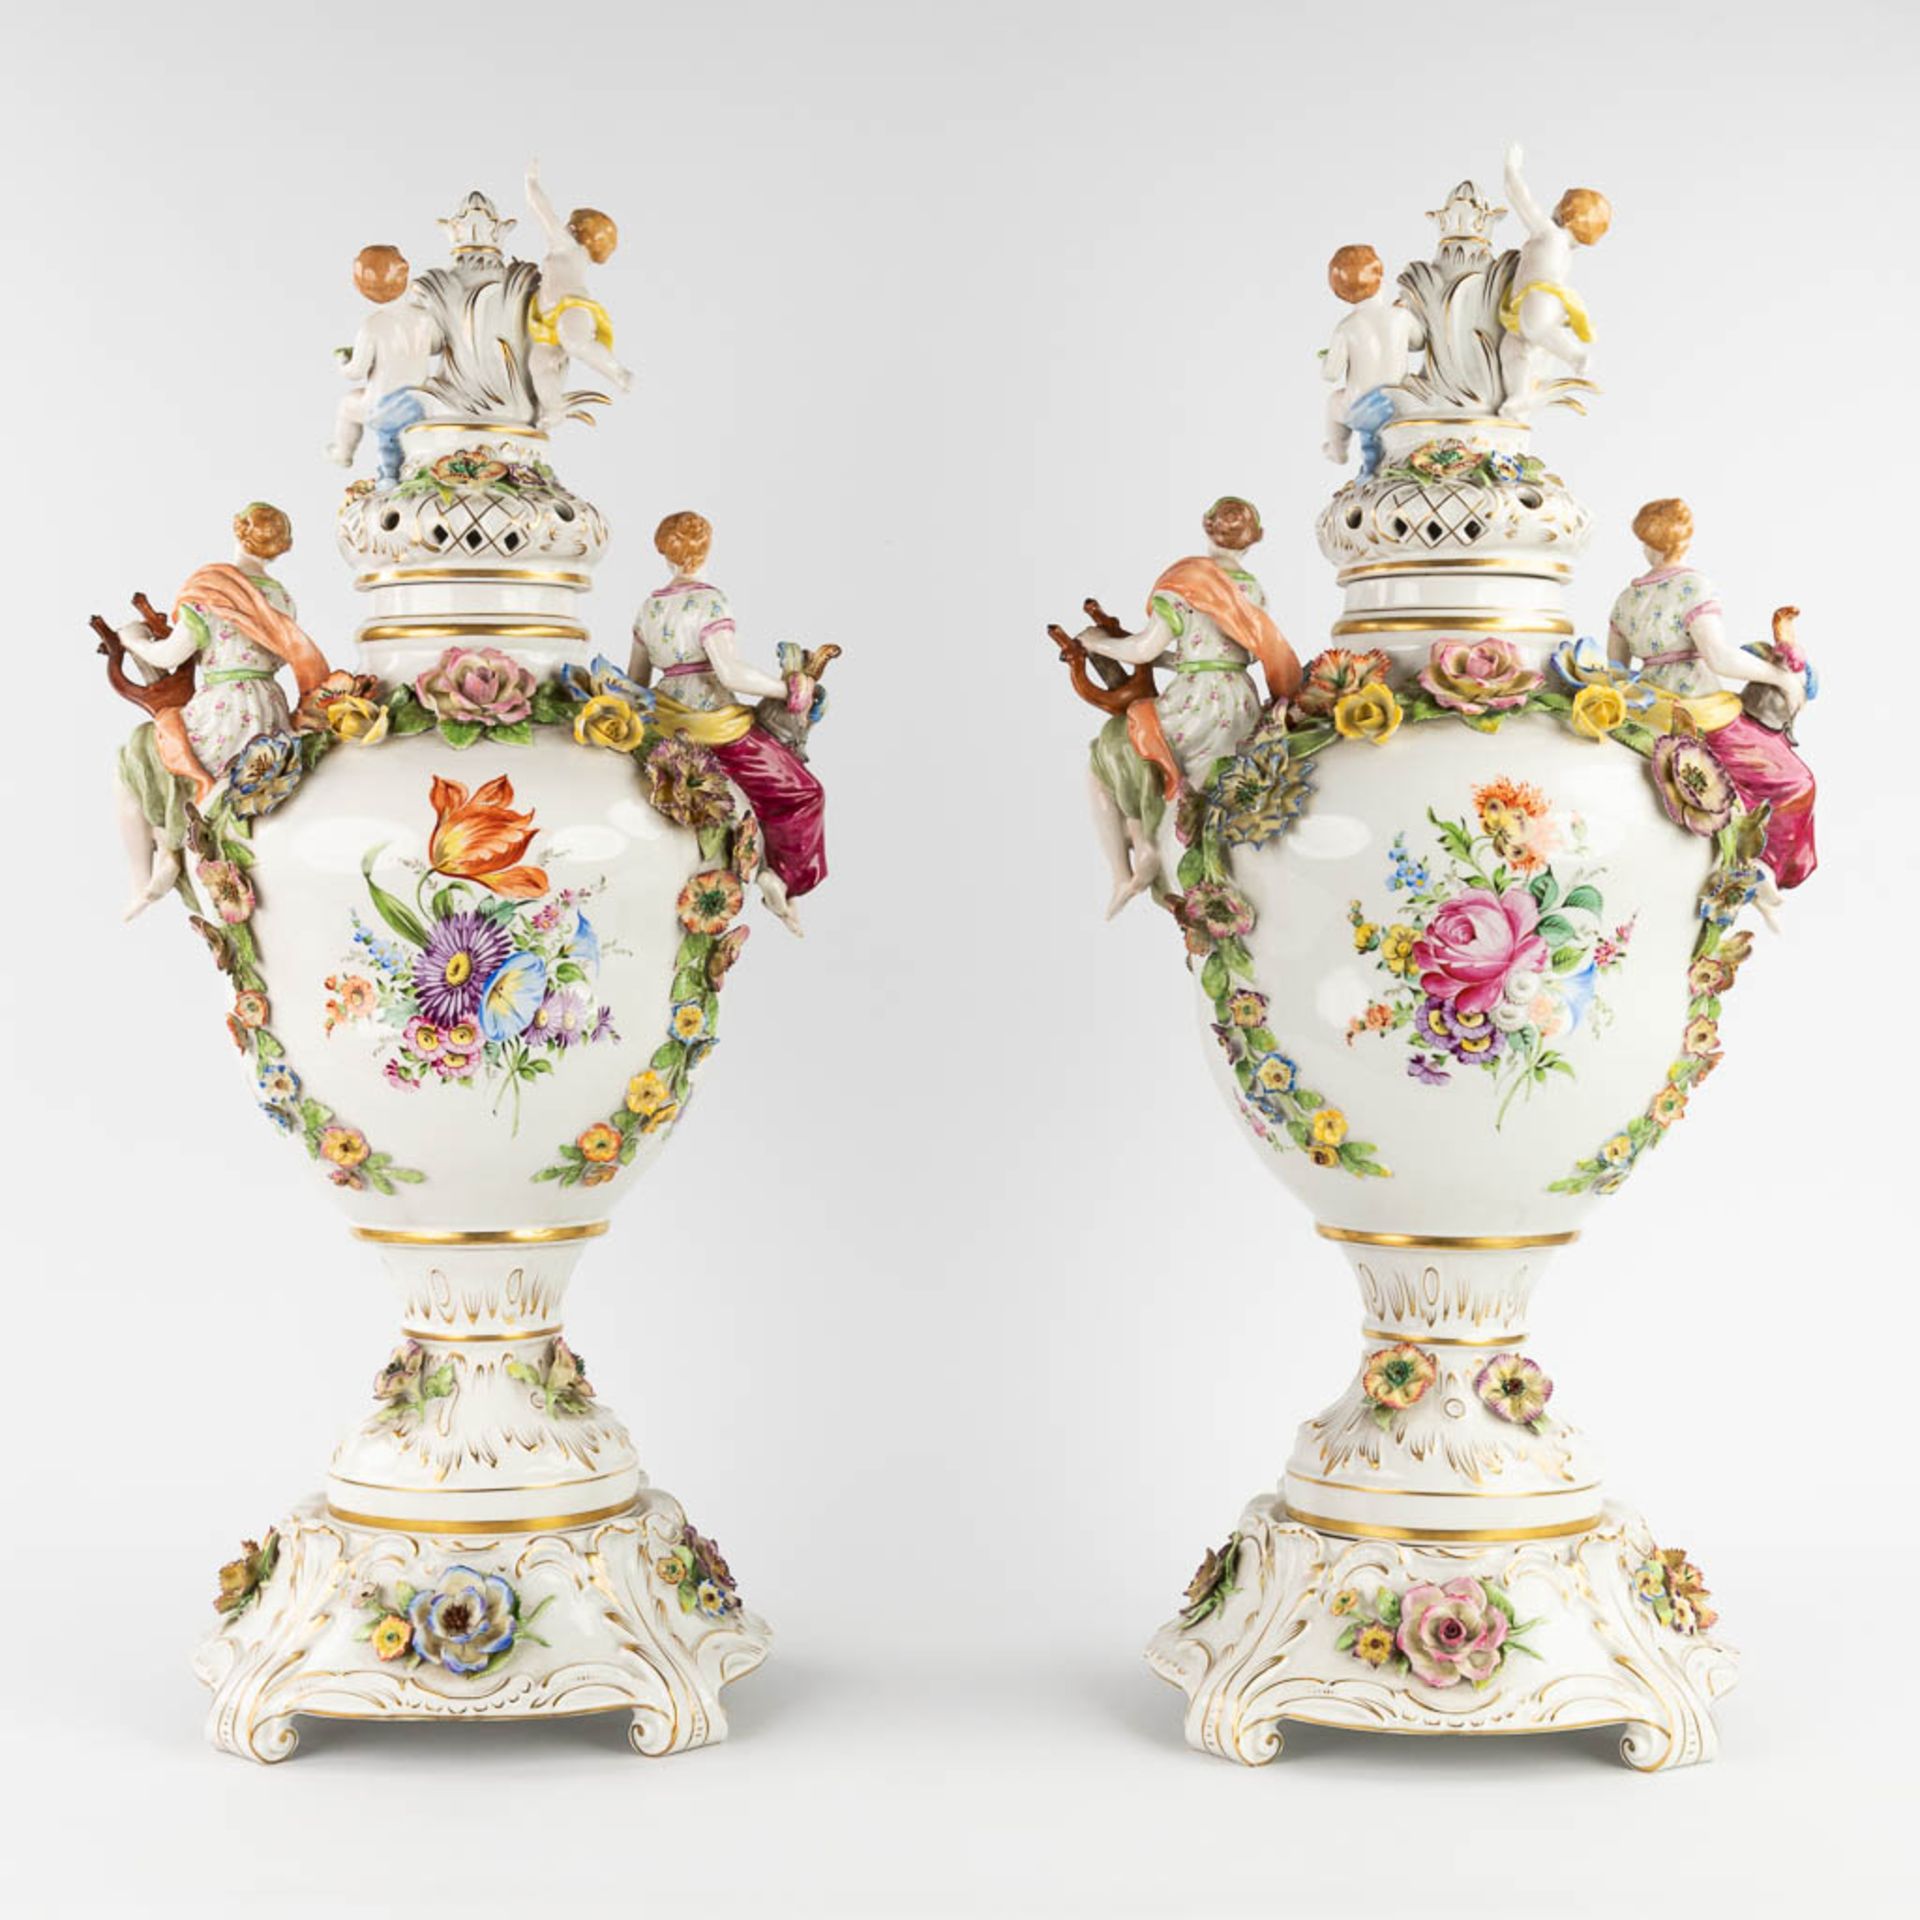 Von Schierholz, Plaue, a pair of large porcelain vases on stands. 20th C. (L:25 x W:35 x H:76 cm) - Image 4 of 19